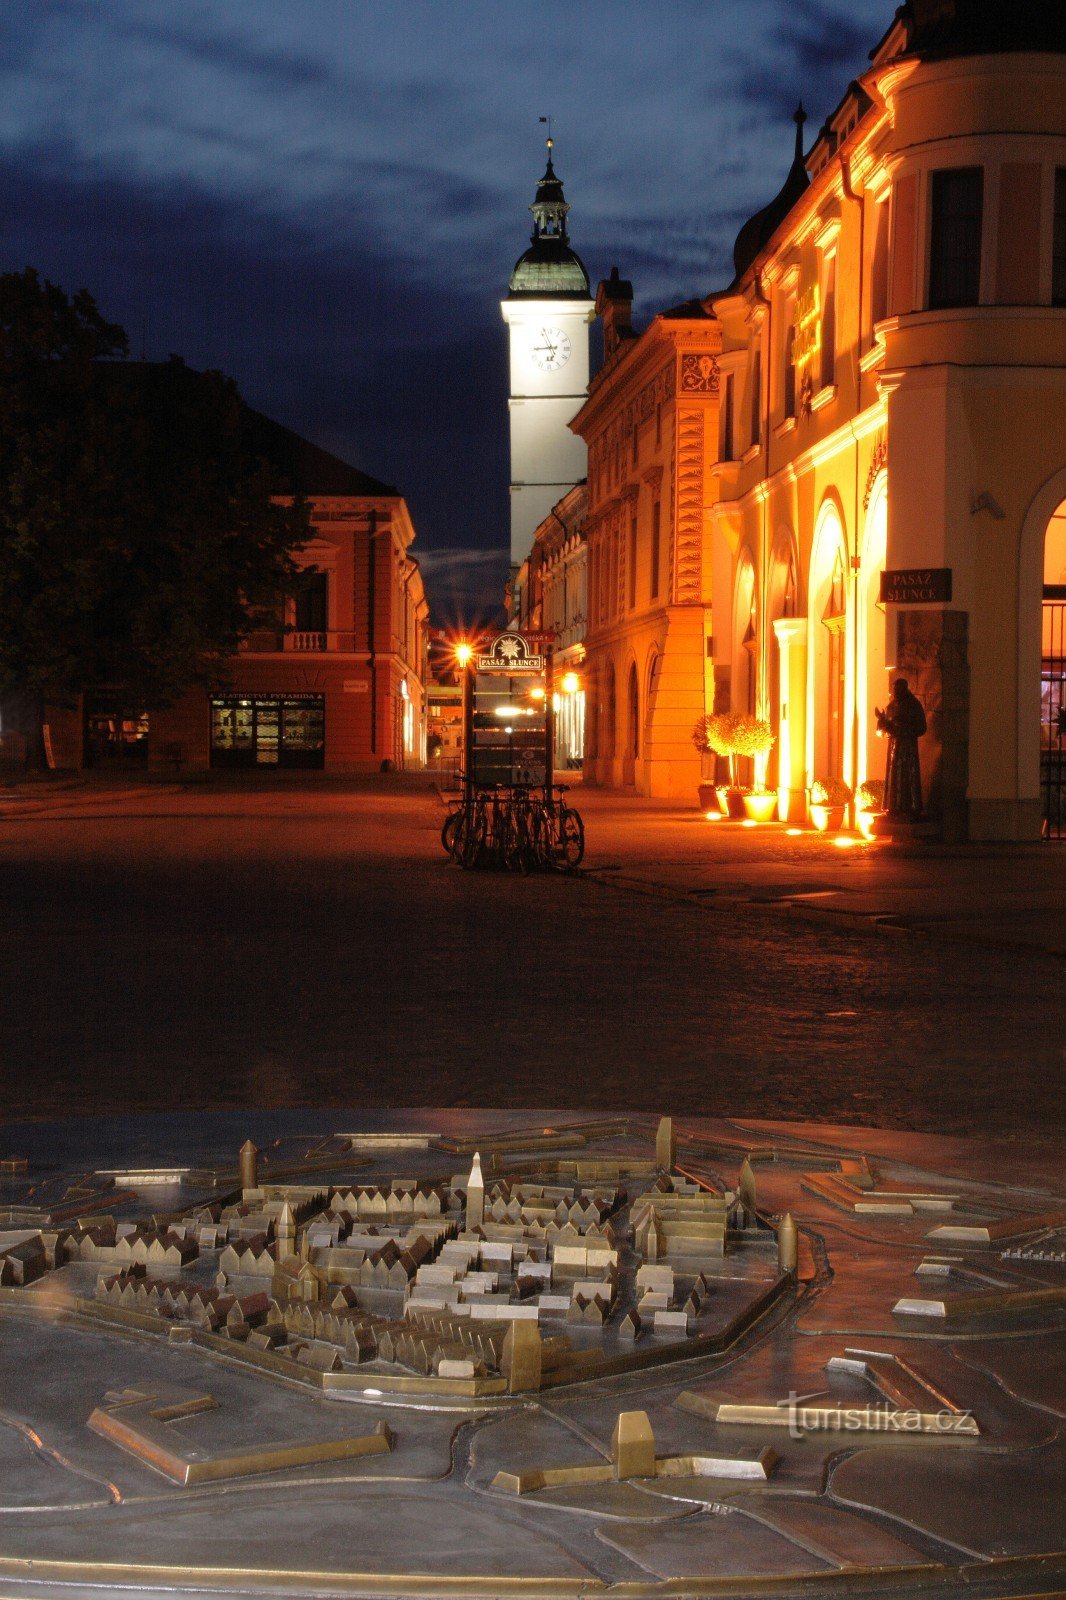 Tower of the old town hall - Uherské Hradiště